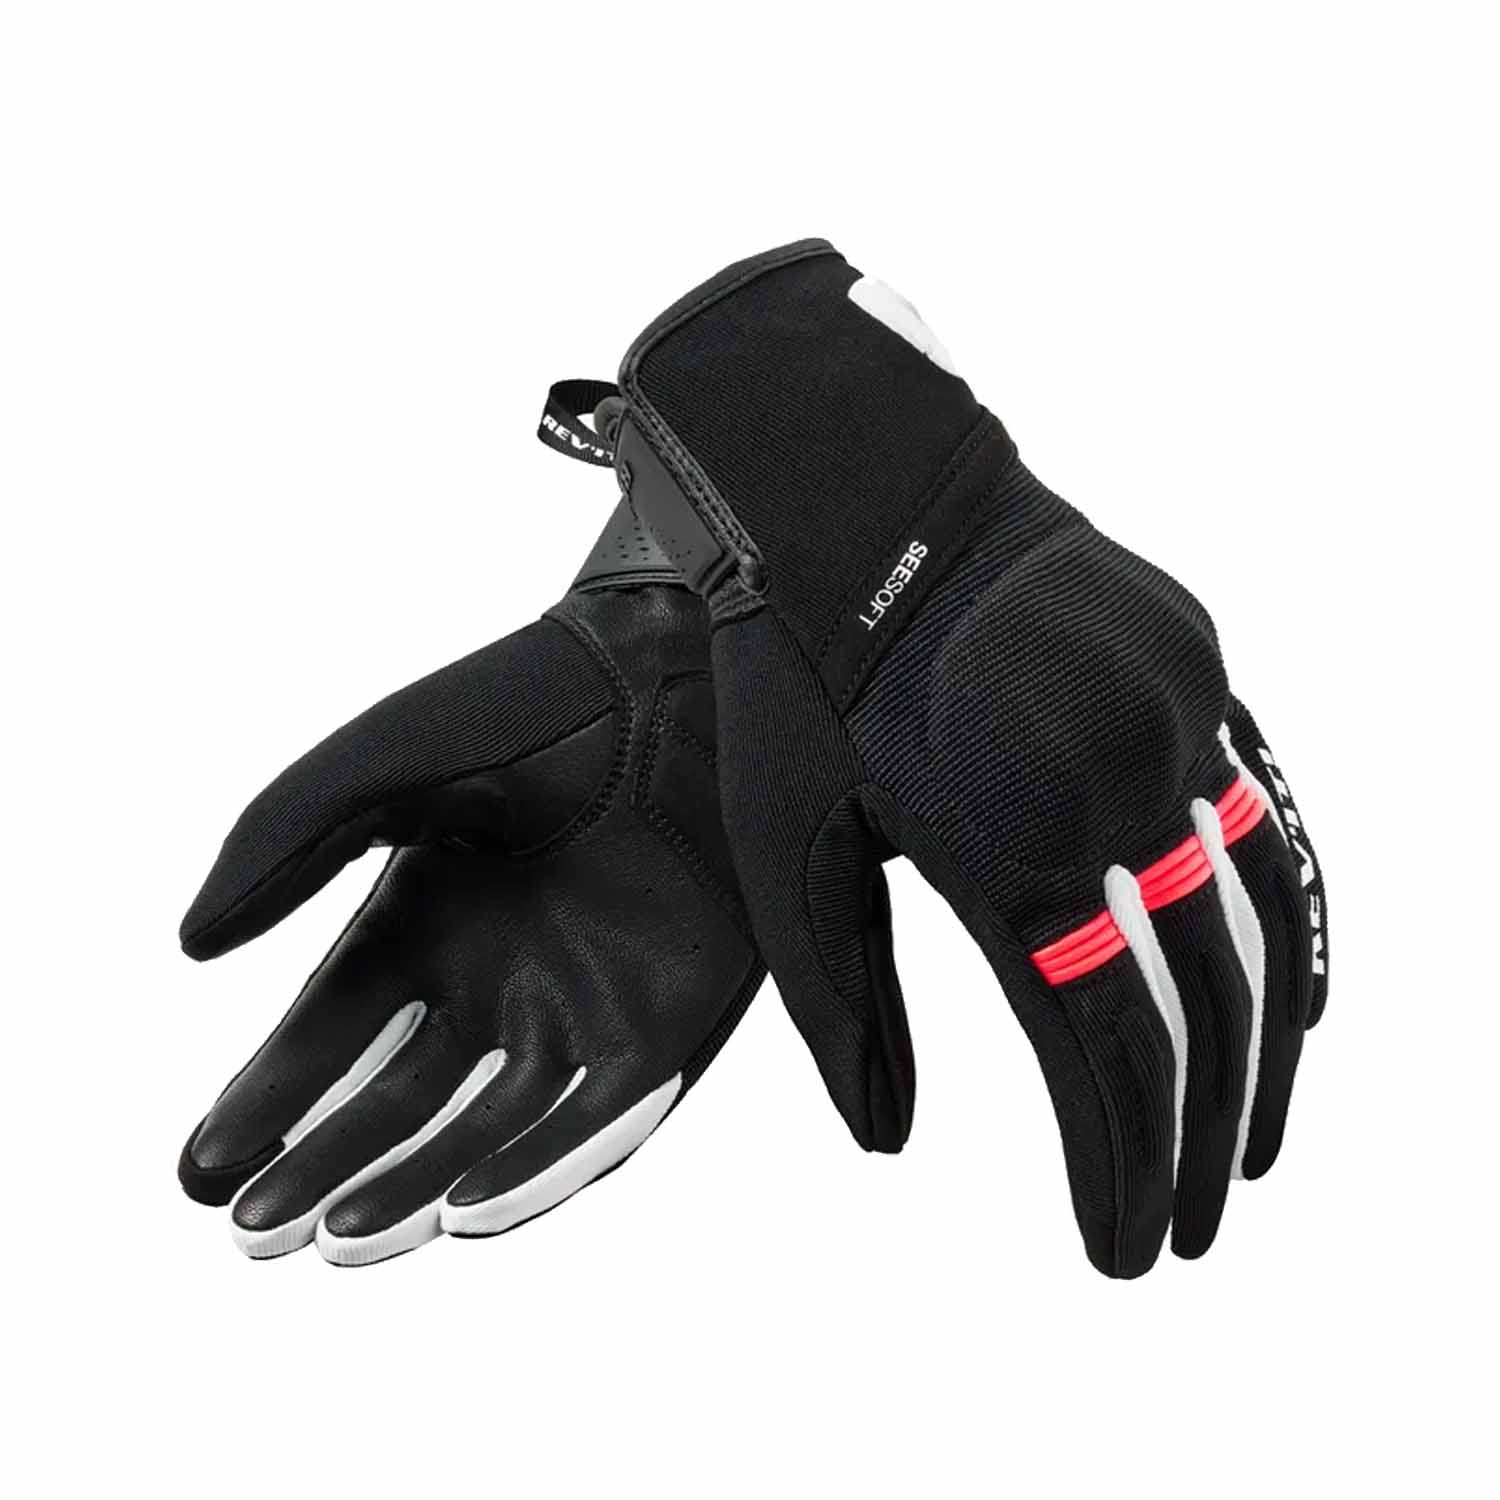 Image of REV'IT! Mosca 2 Ladies Gloves Black Pink Größe M